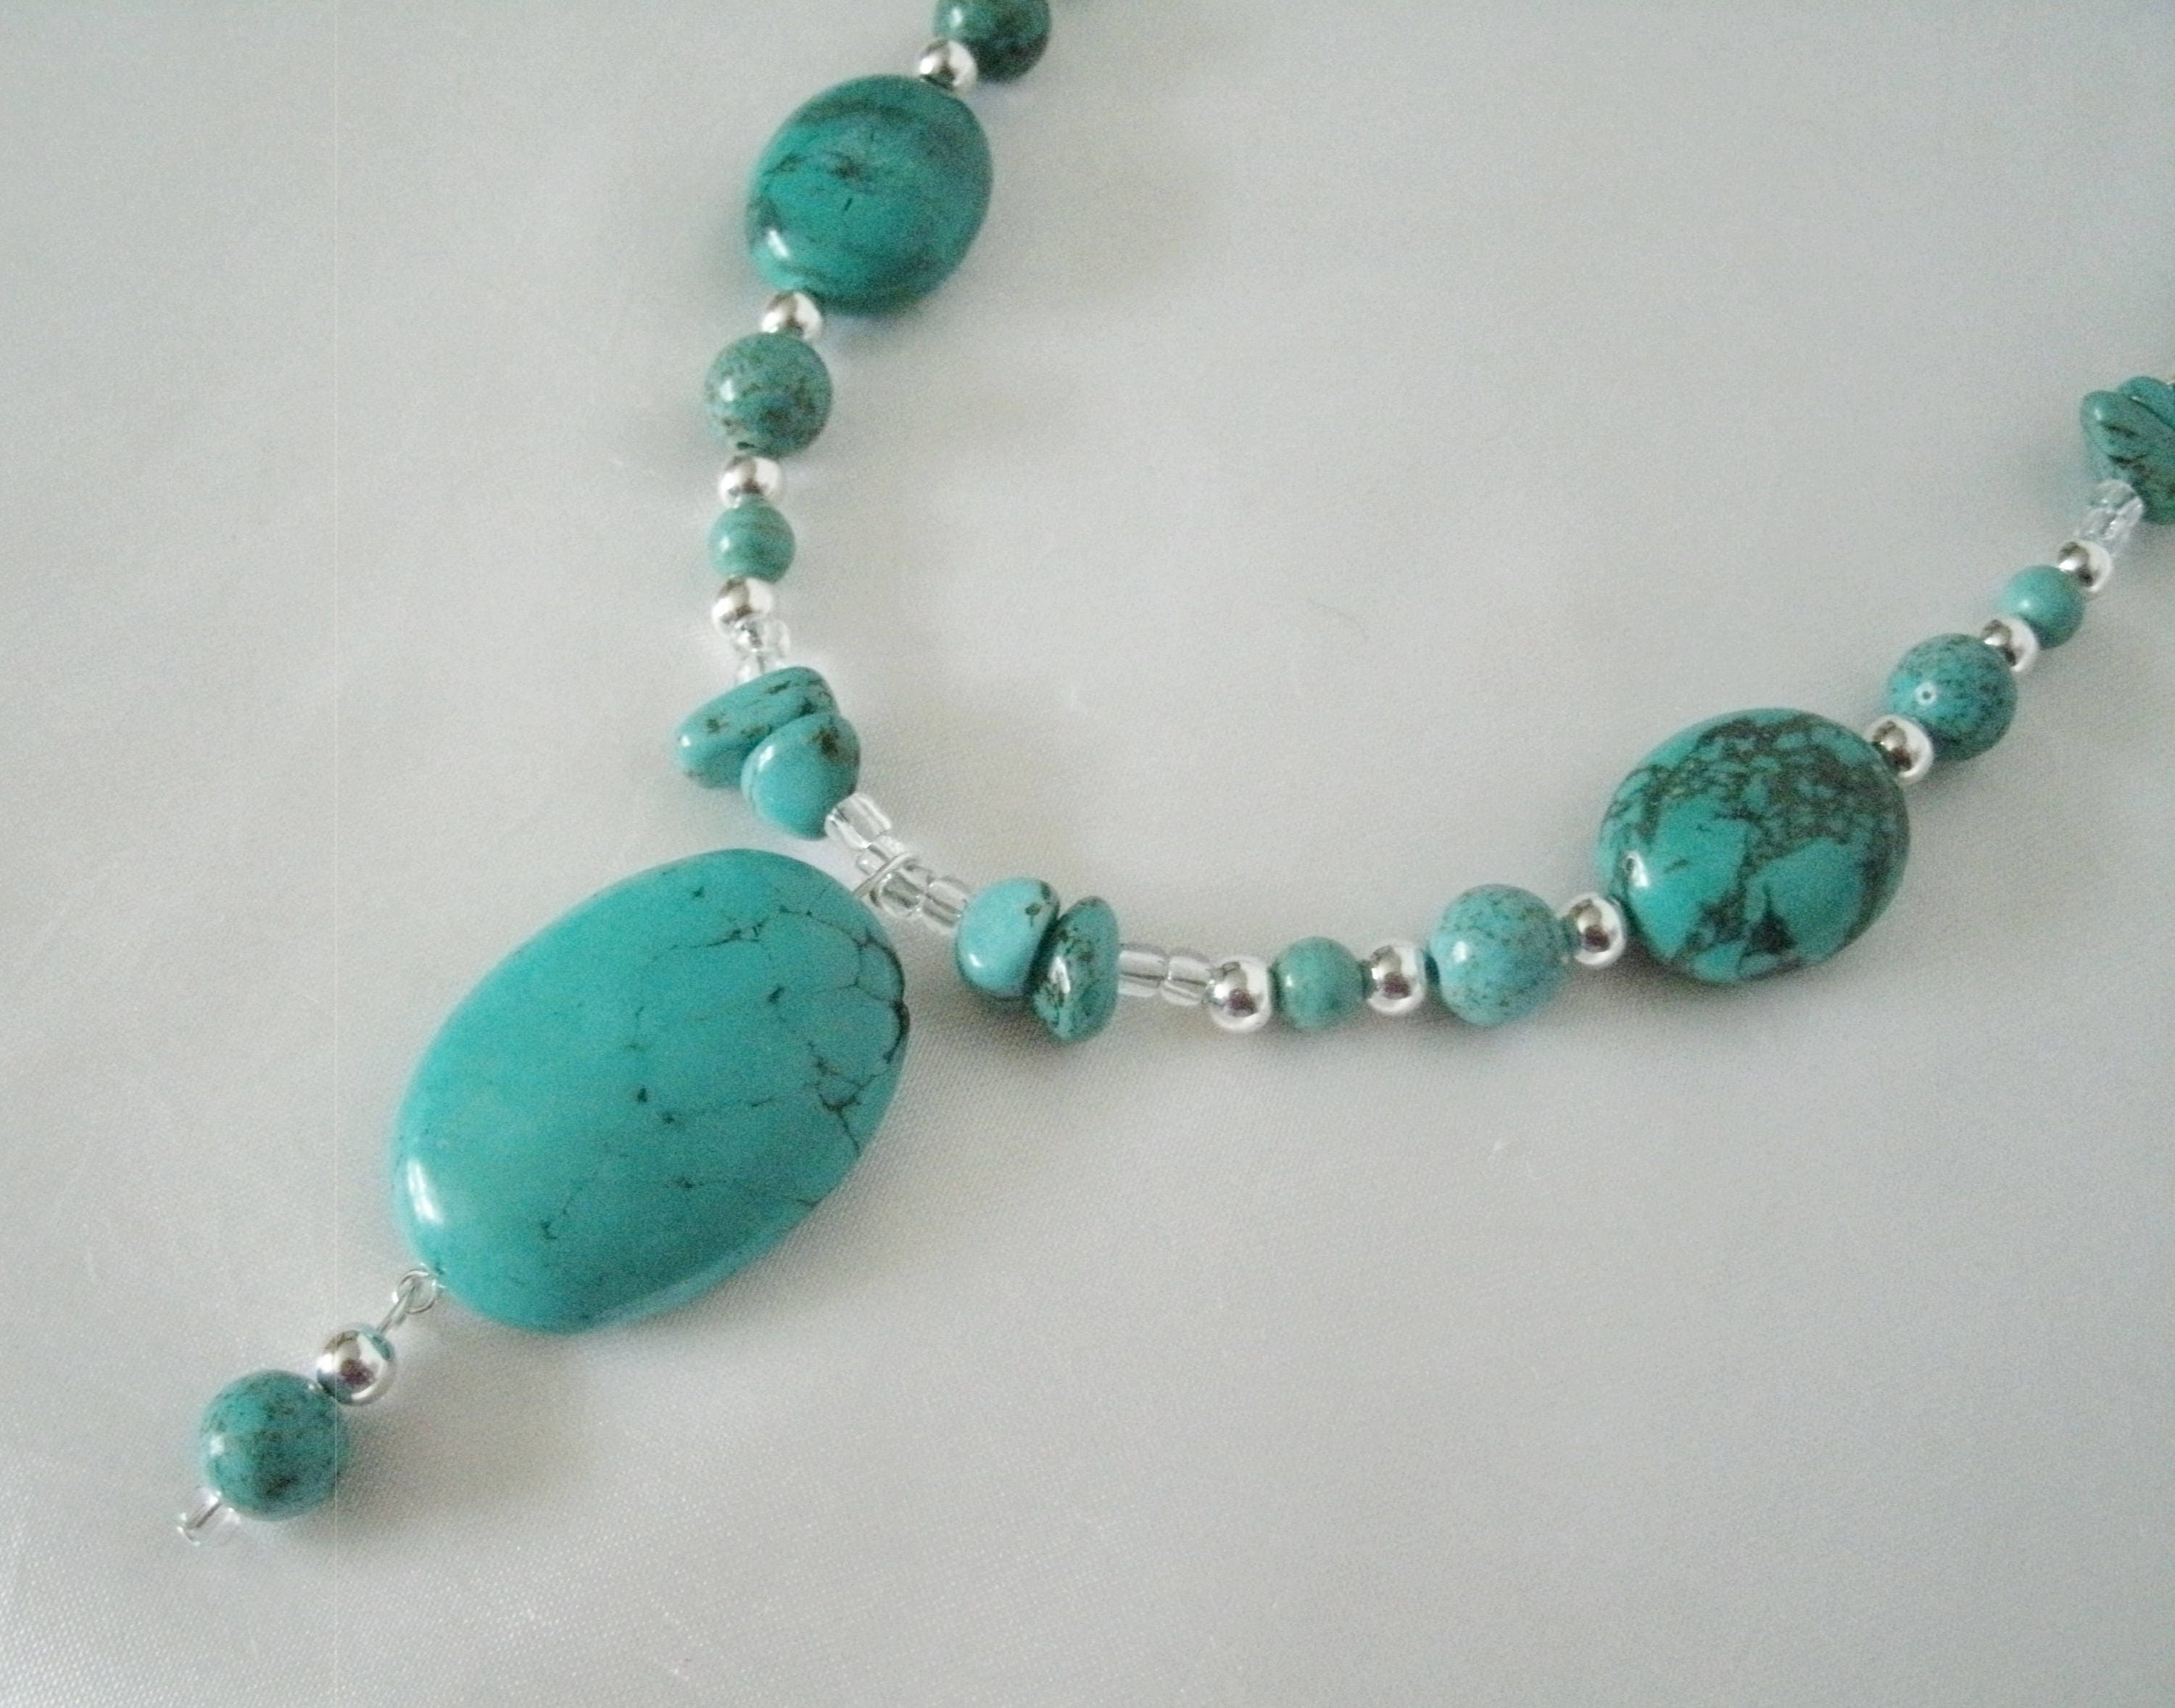 Turquoise Necklace Southwestern Jewelry Southwest Jewelry | Etsy